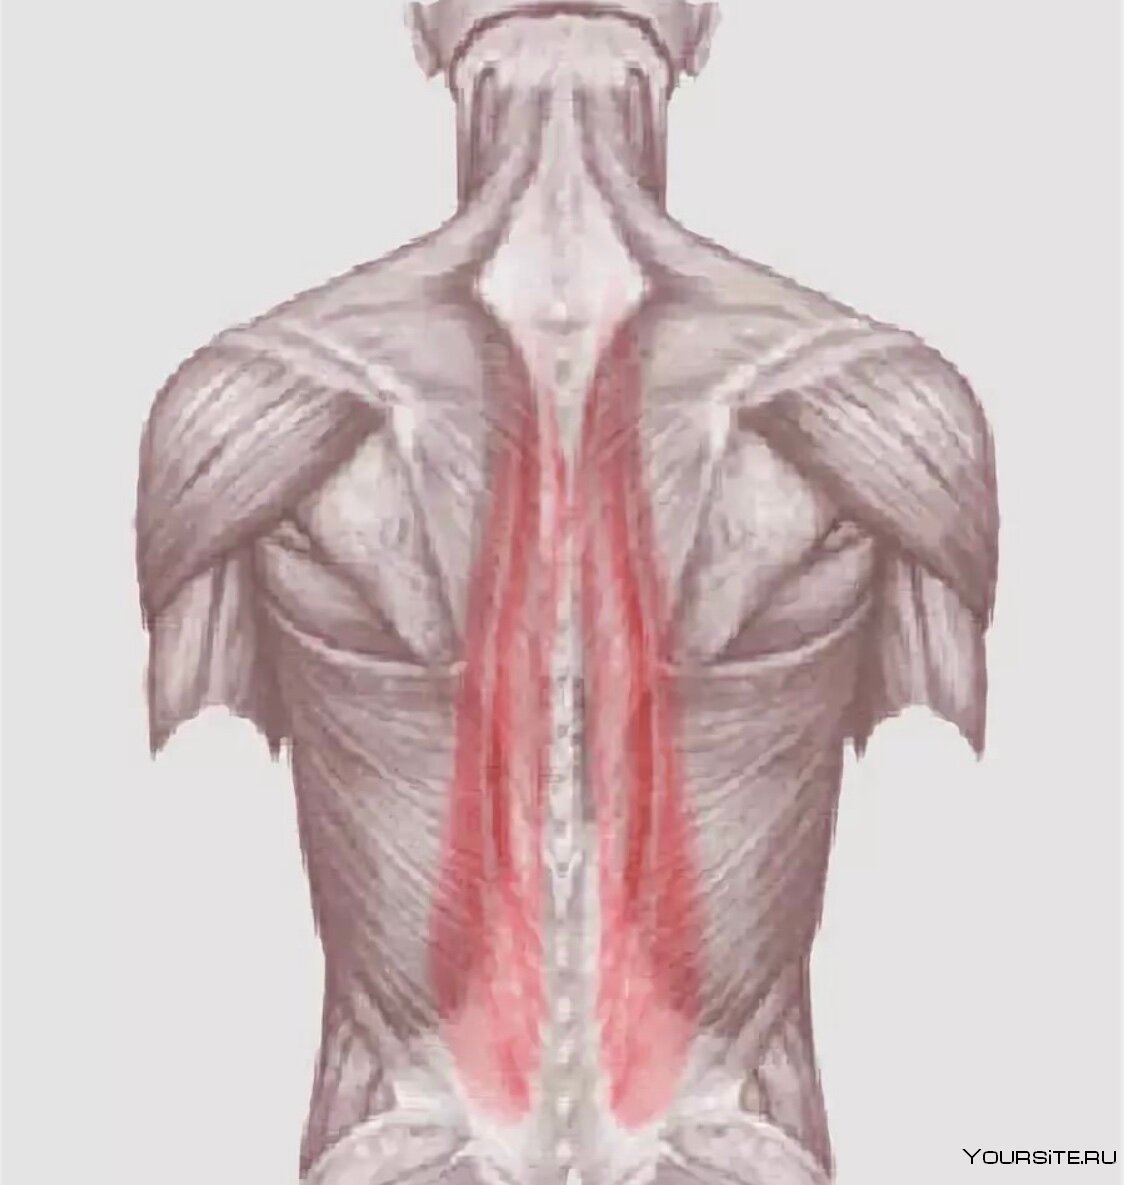 Мышцы шеи и плеча анатомия